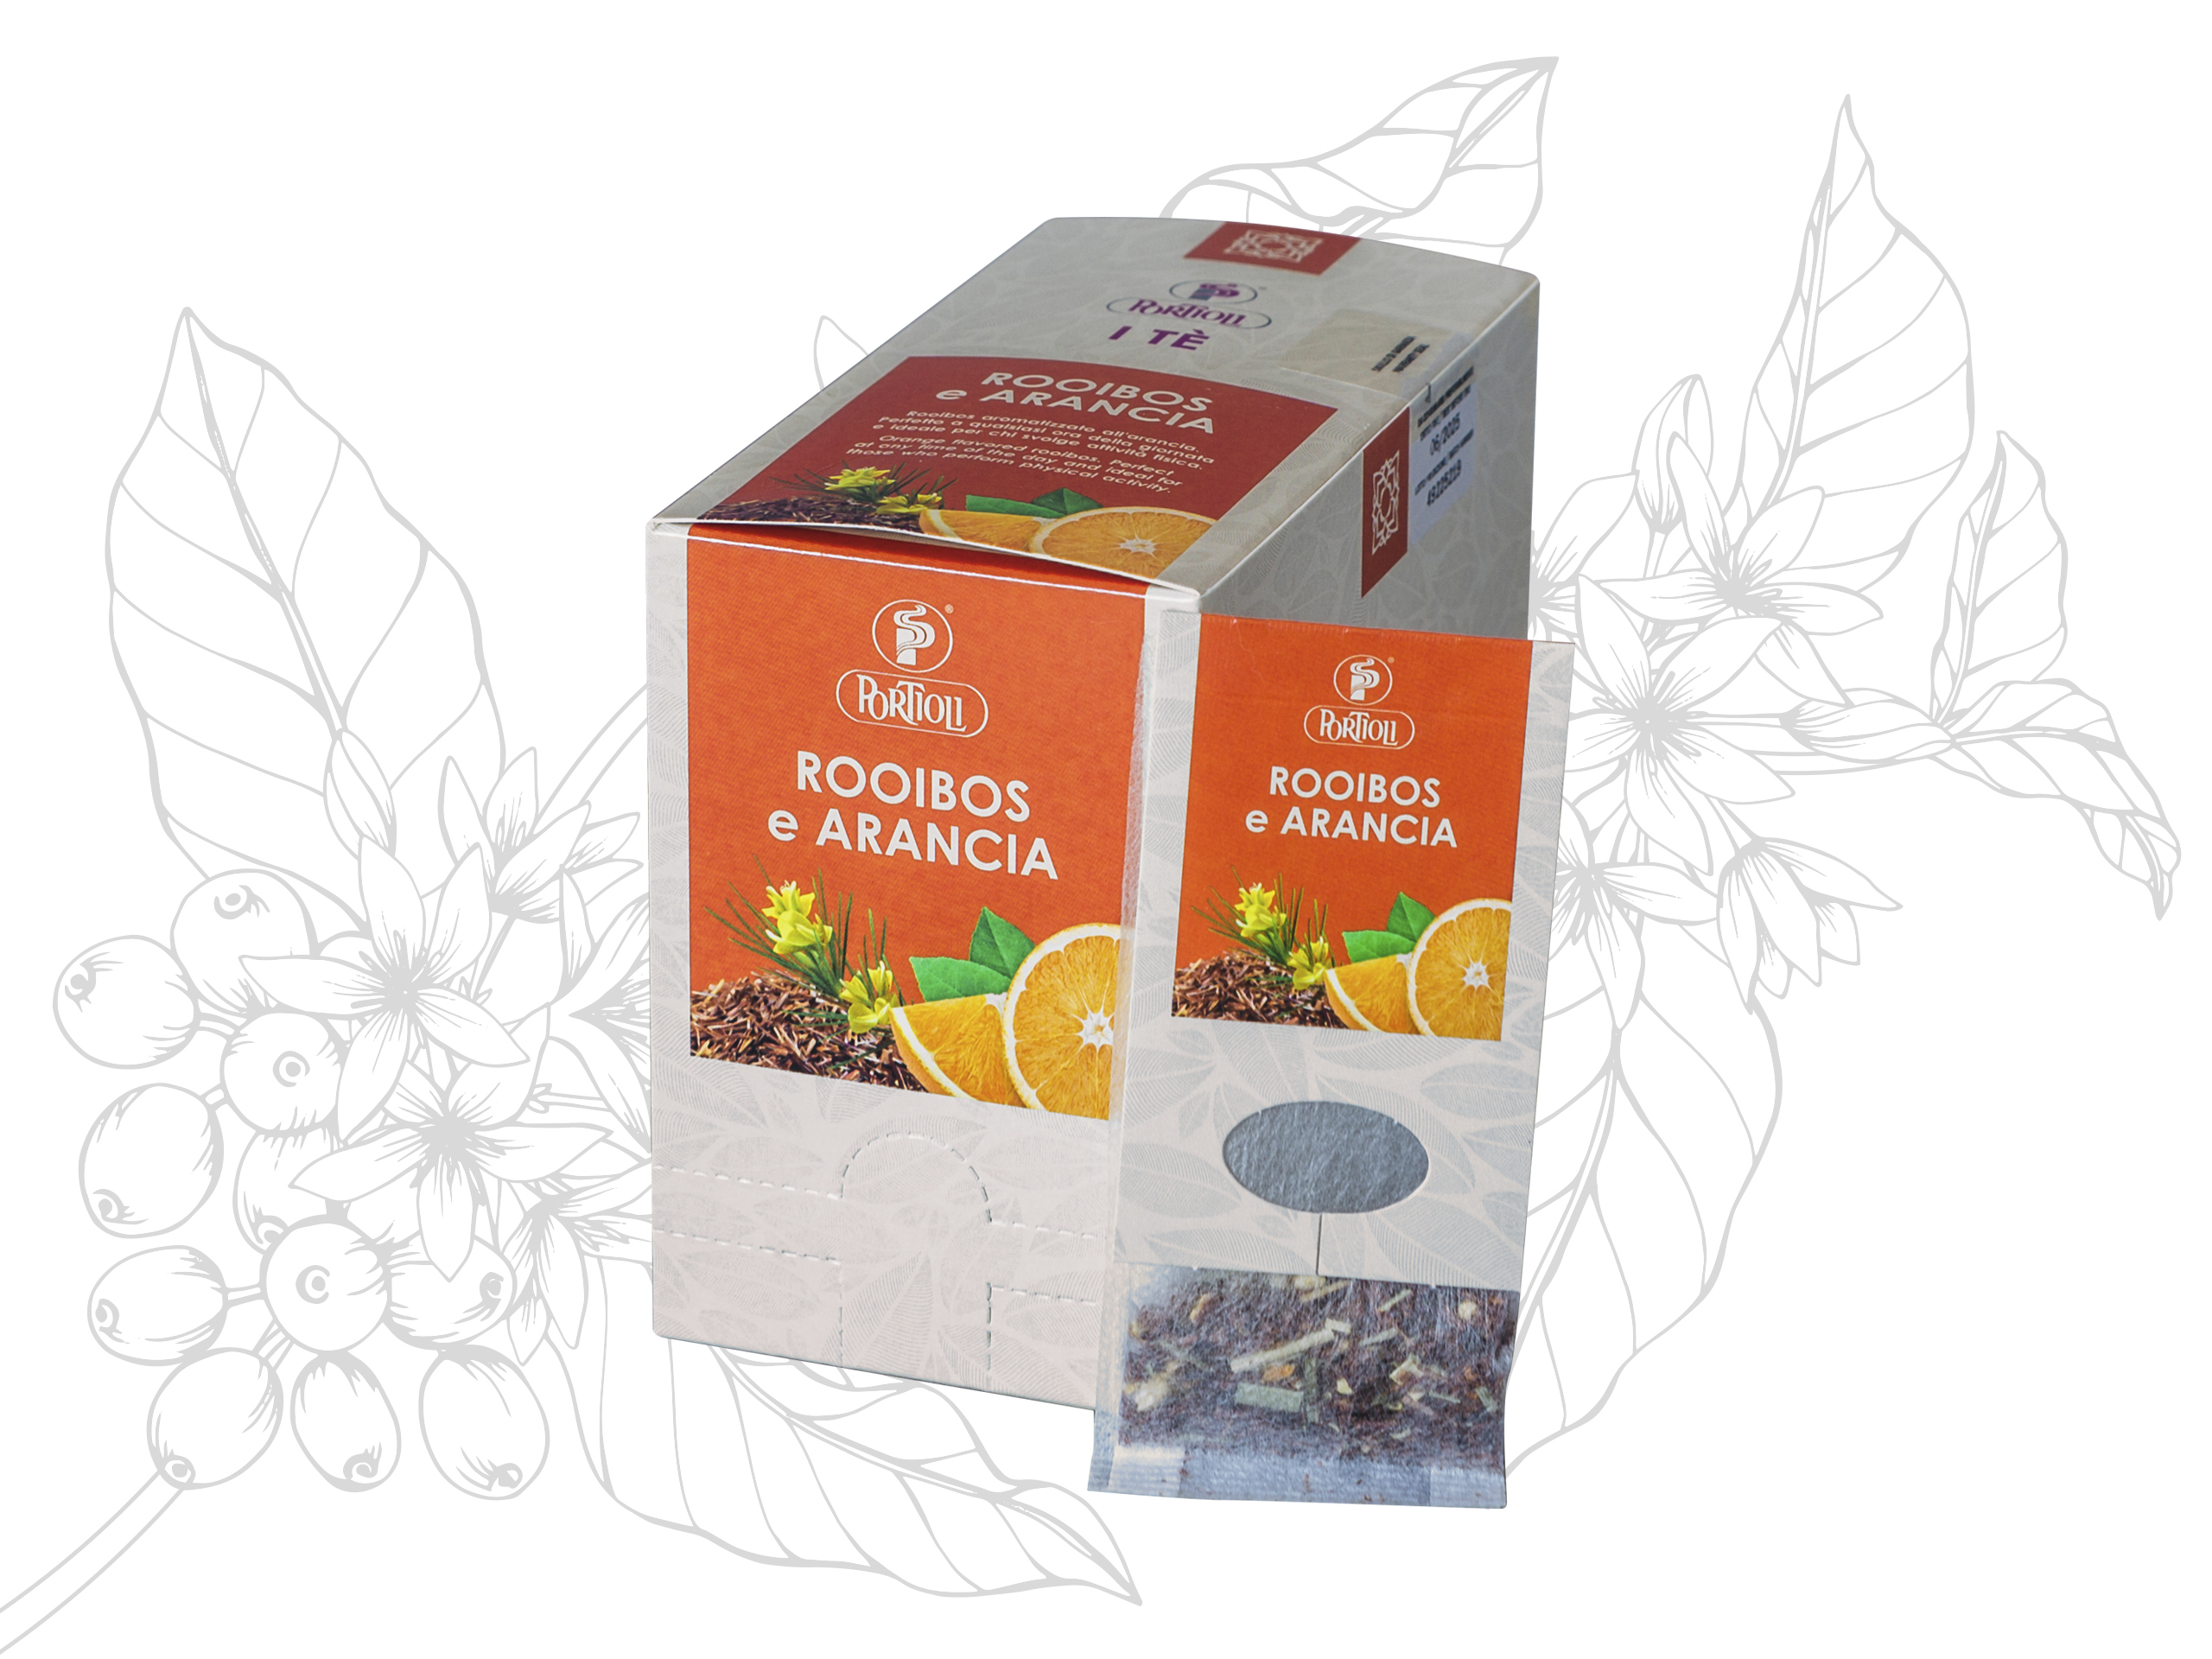 Portioli Tea Rooibos and Orange